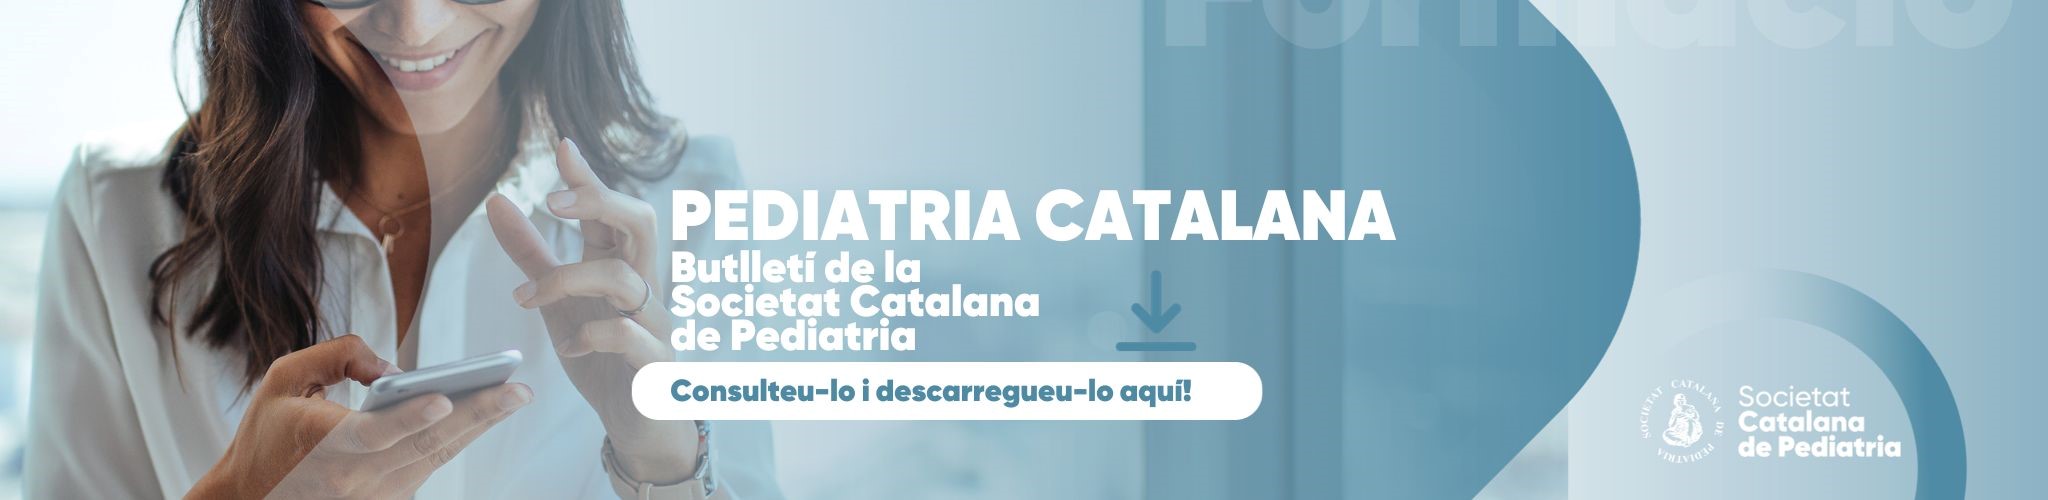 Butlletí de la Societat Catalana de Pediatria